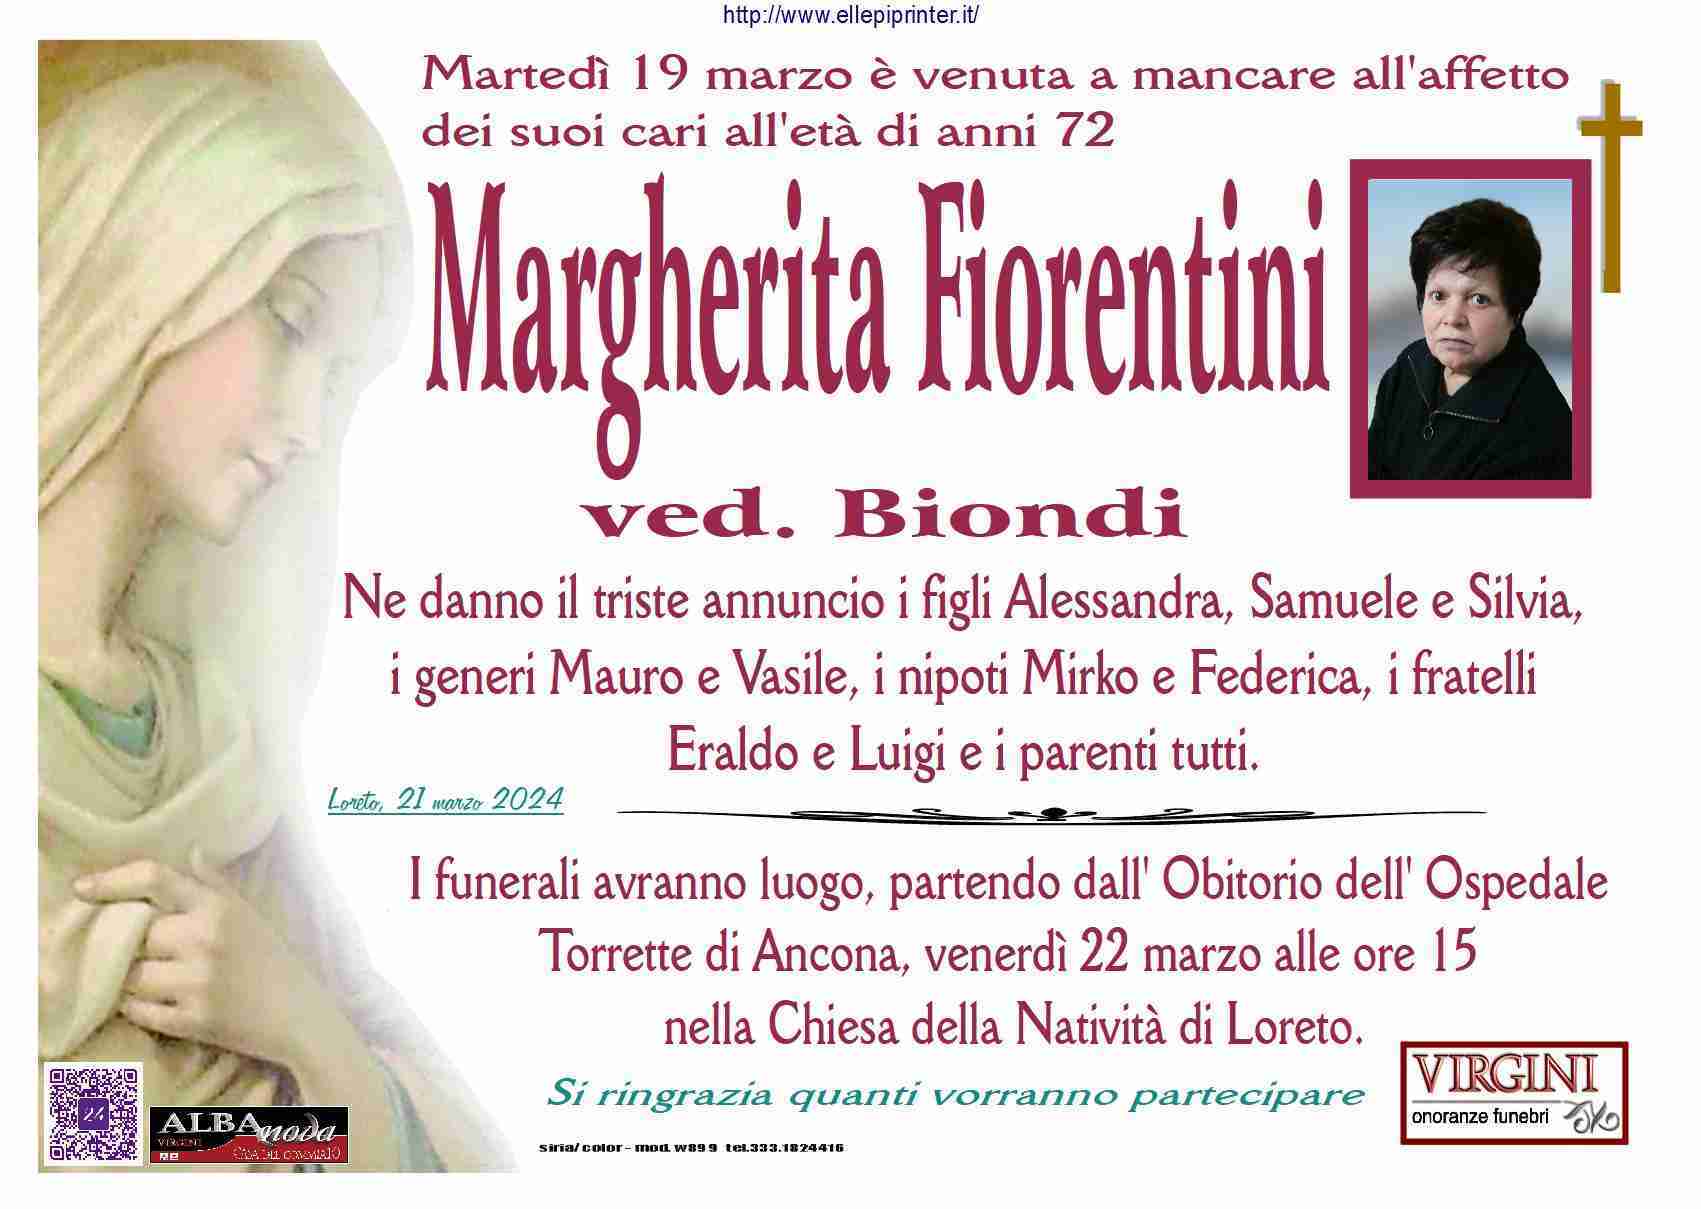 Margherita Fiorentini